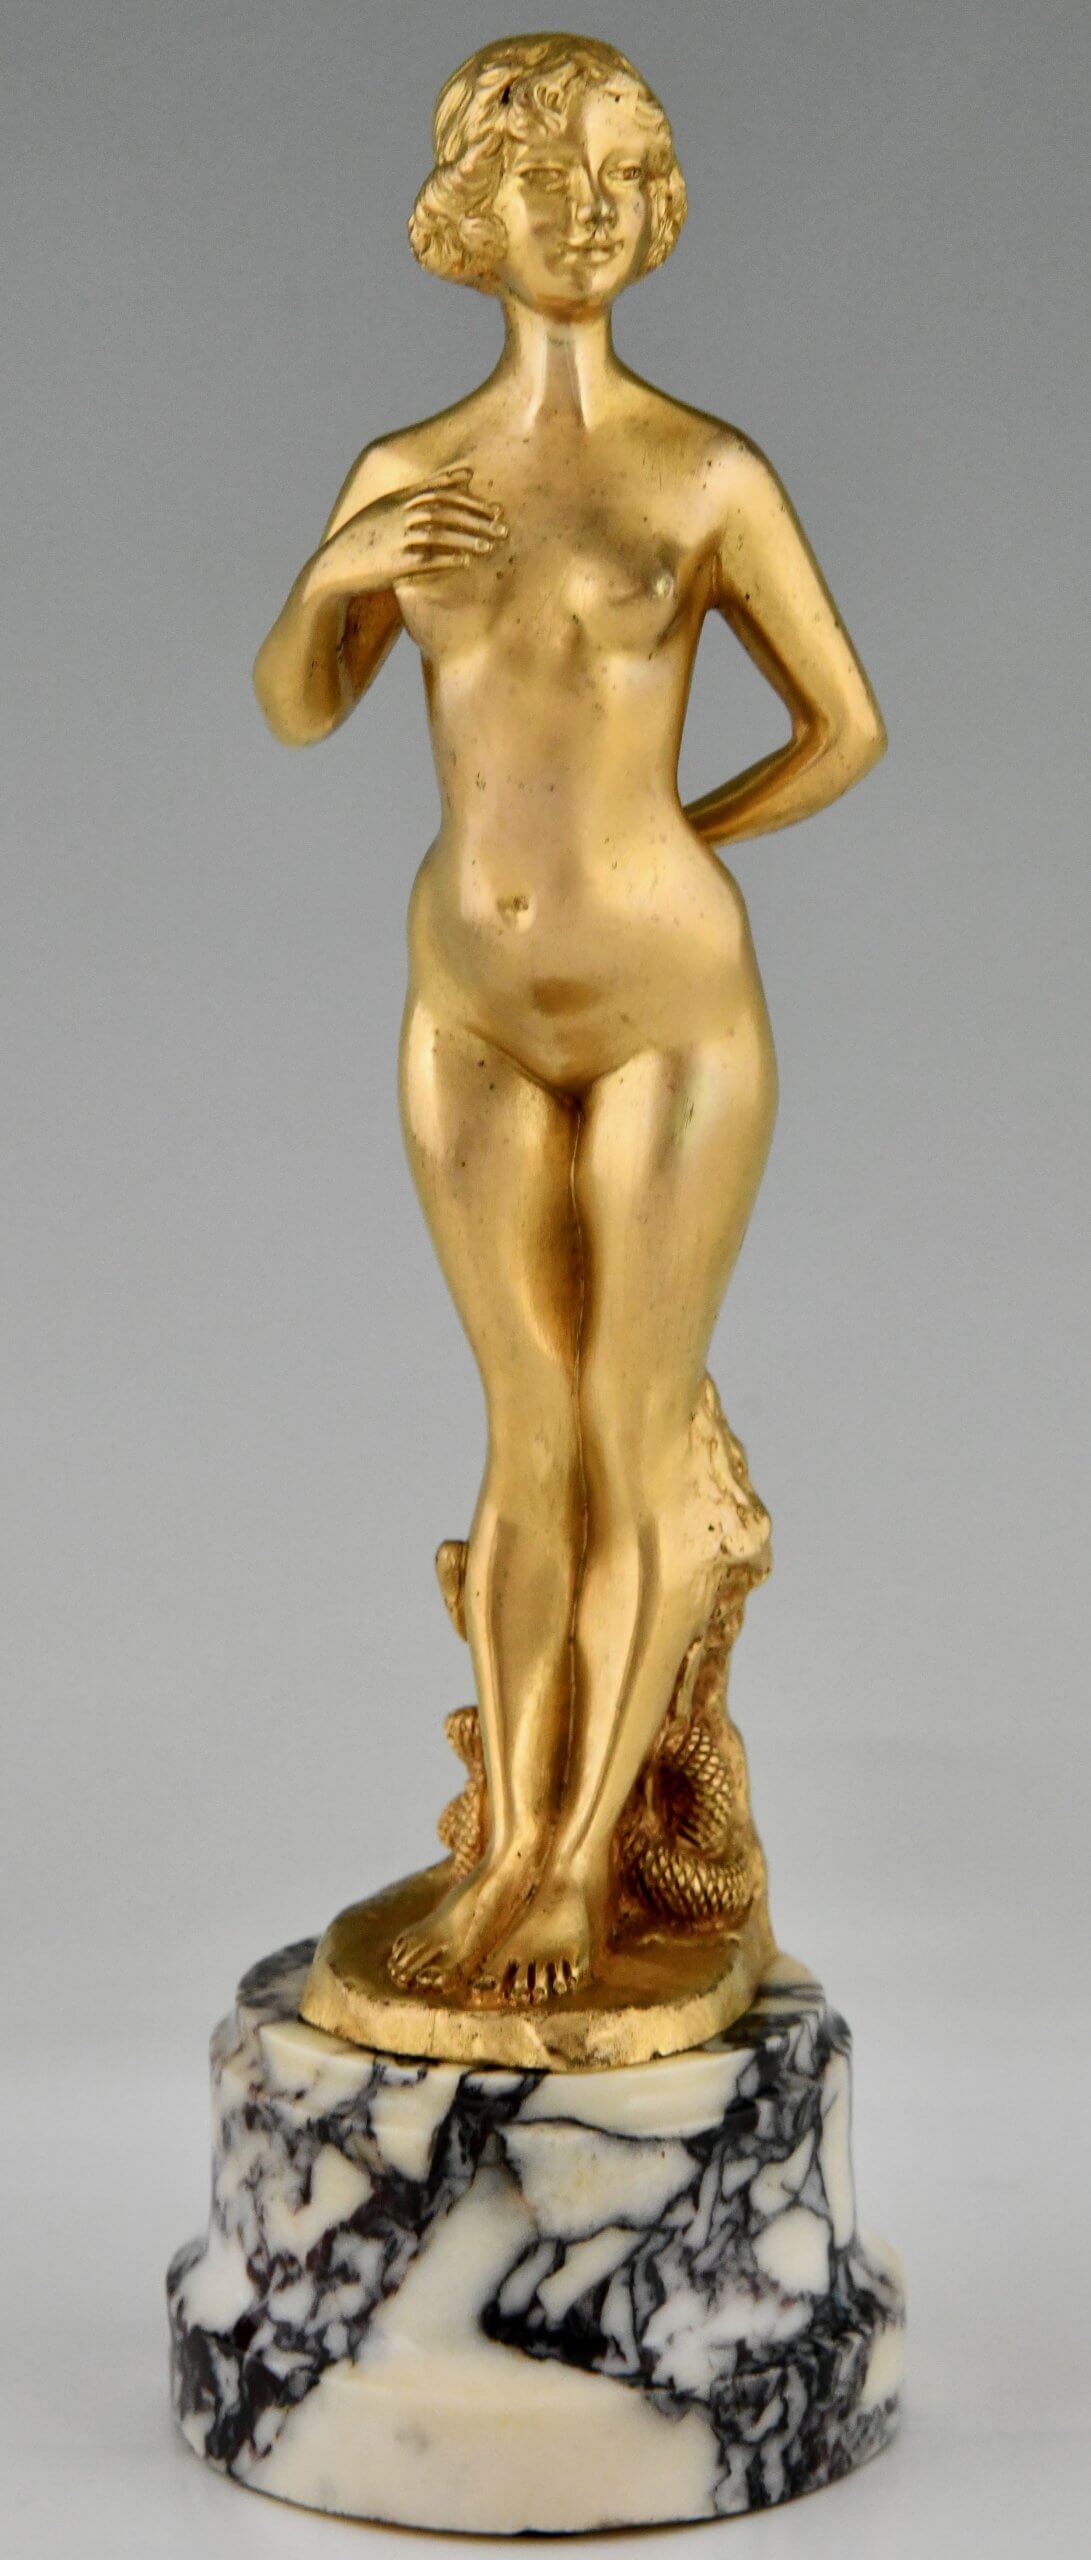 Pair of Art Nouveau bronze nude sculptures